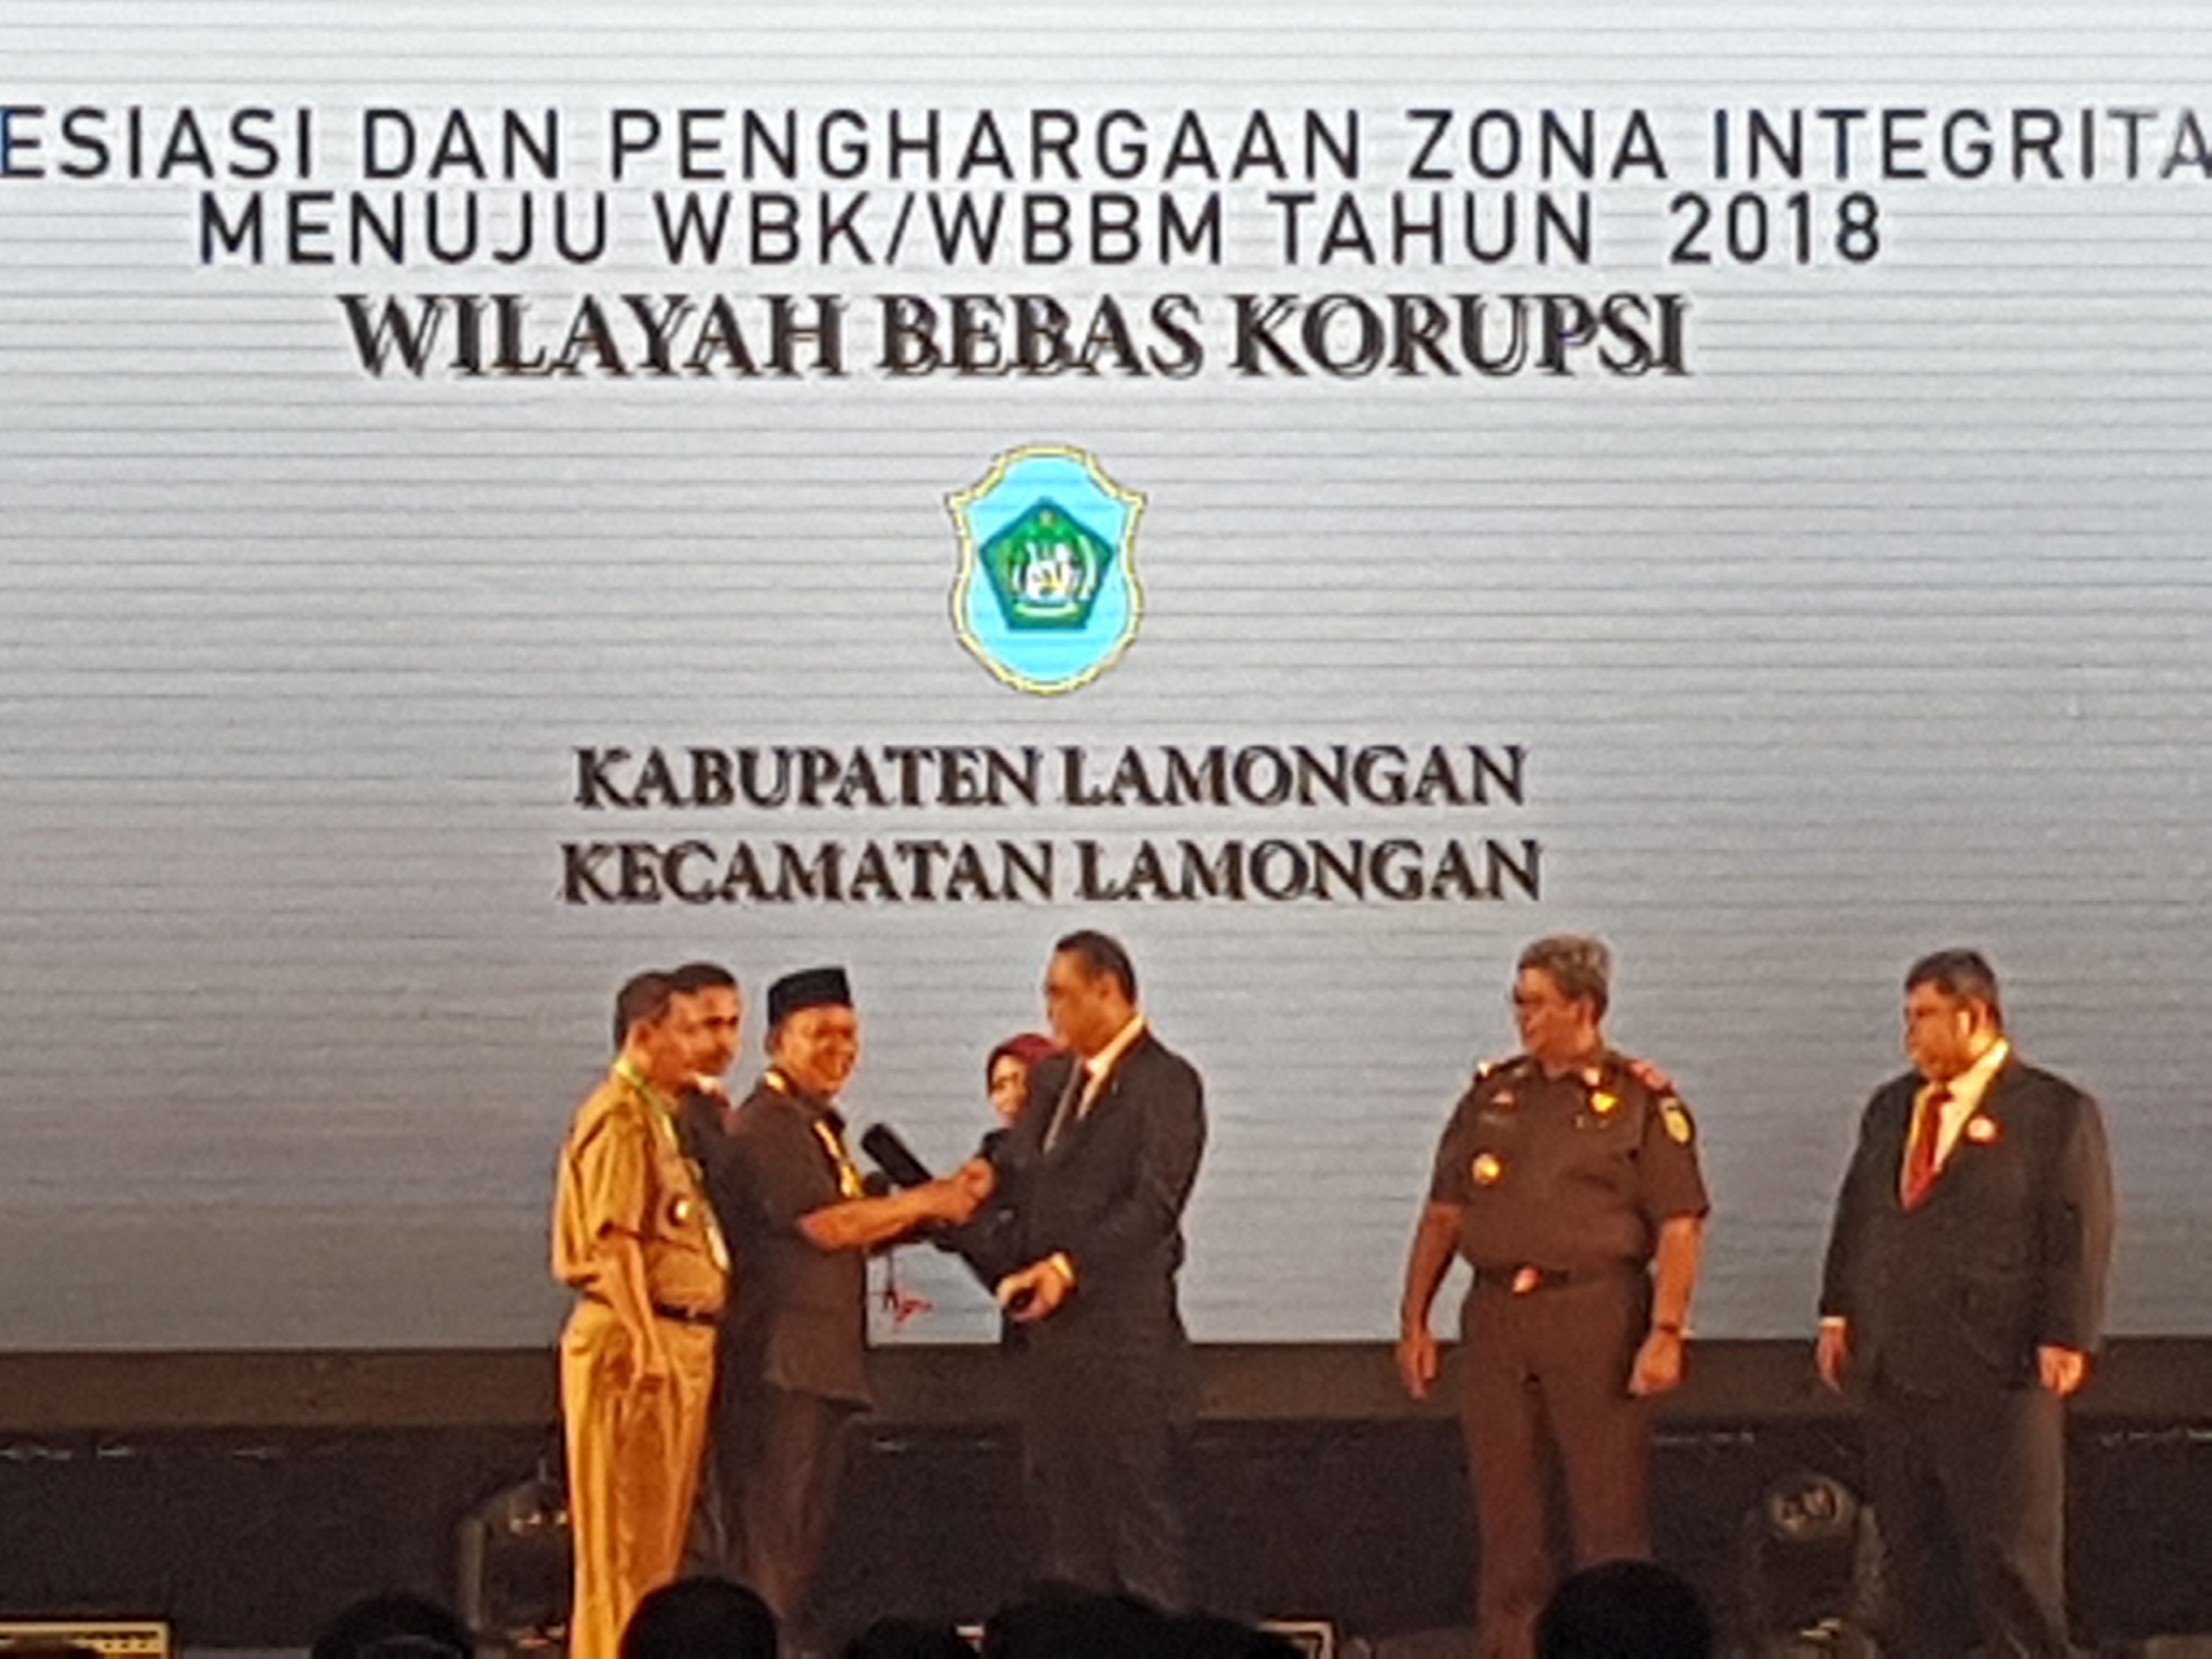 Bupati Lamongan saat menerima penghargaan zona integritas (Foto: Istimewa/ngopibareng.id)